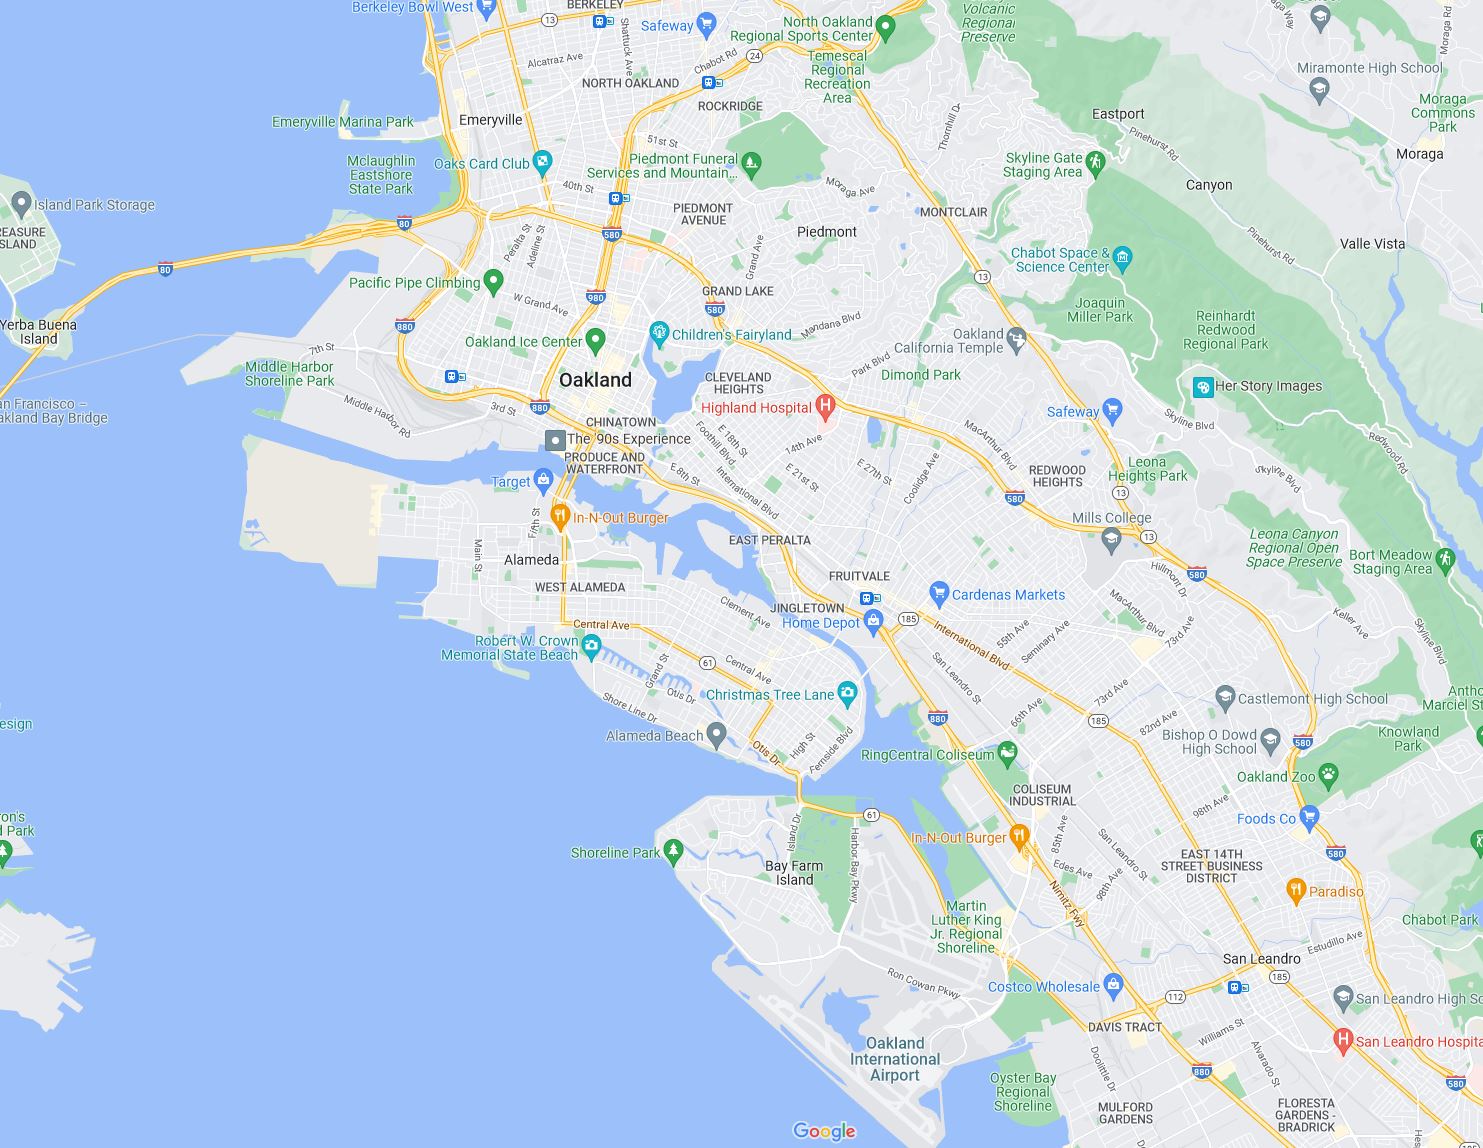 same area, google maps